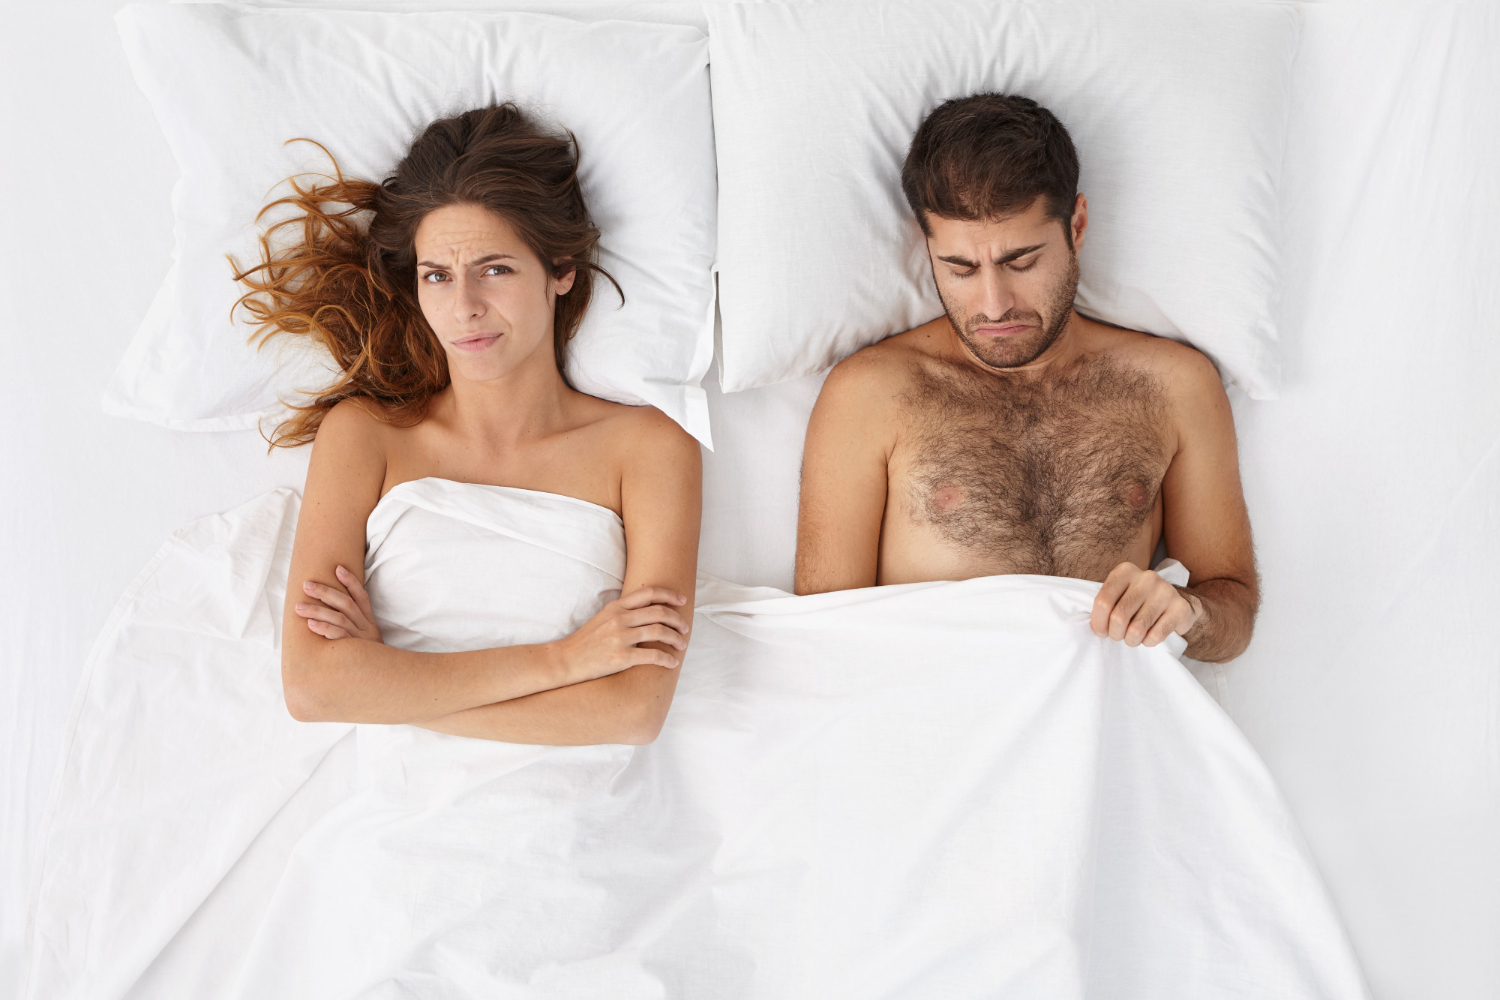 Скрытые проблемы: 10 причин, почему мужчина отказывается от секса | MARIECLAIRE